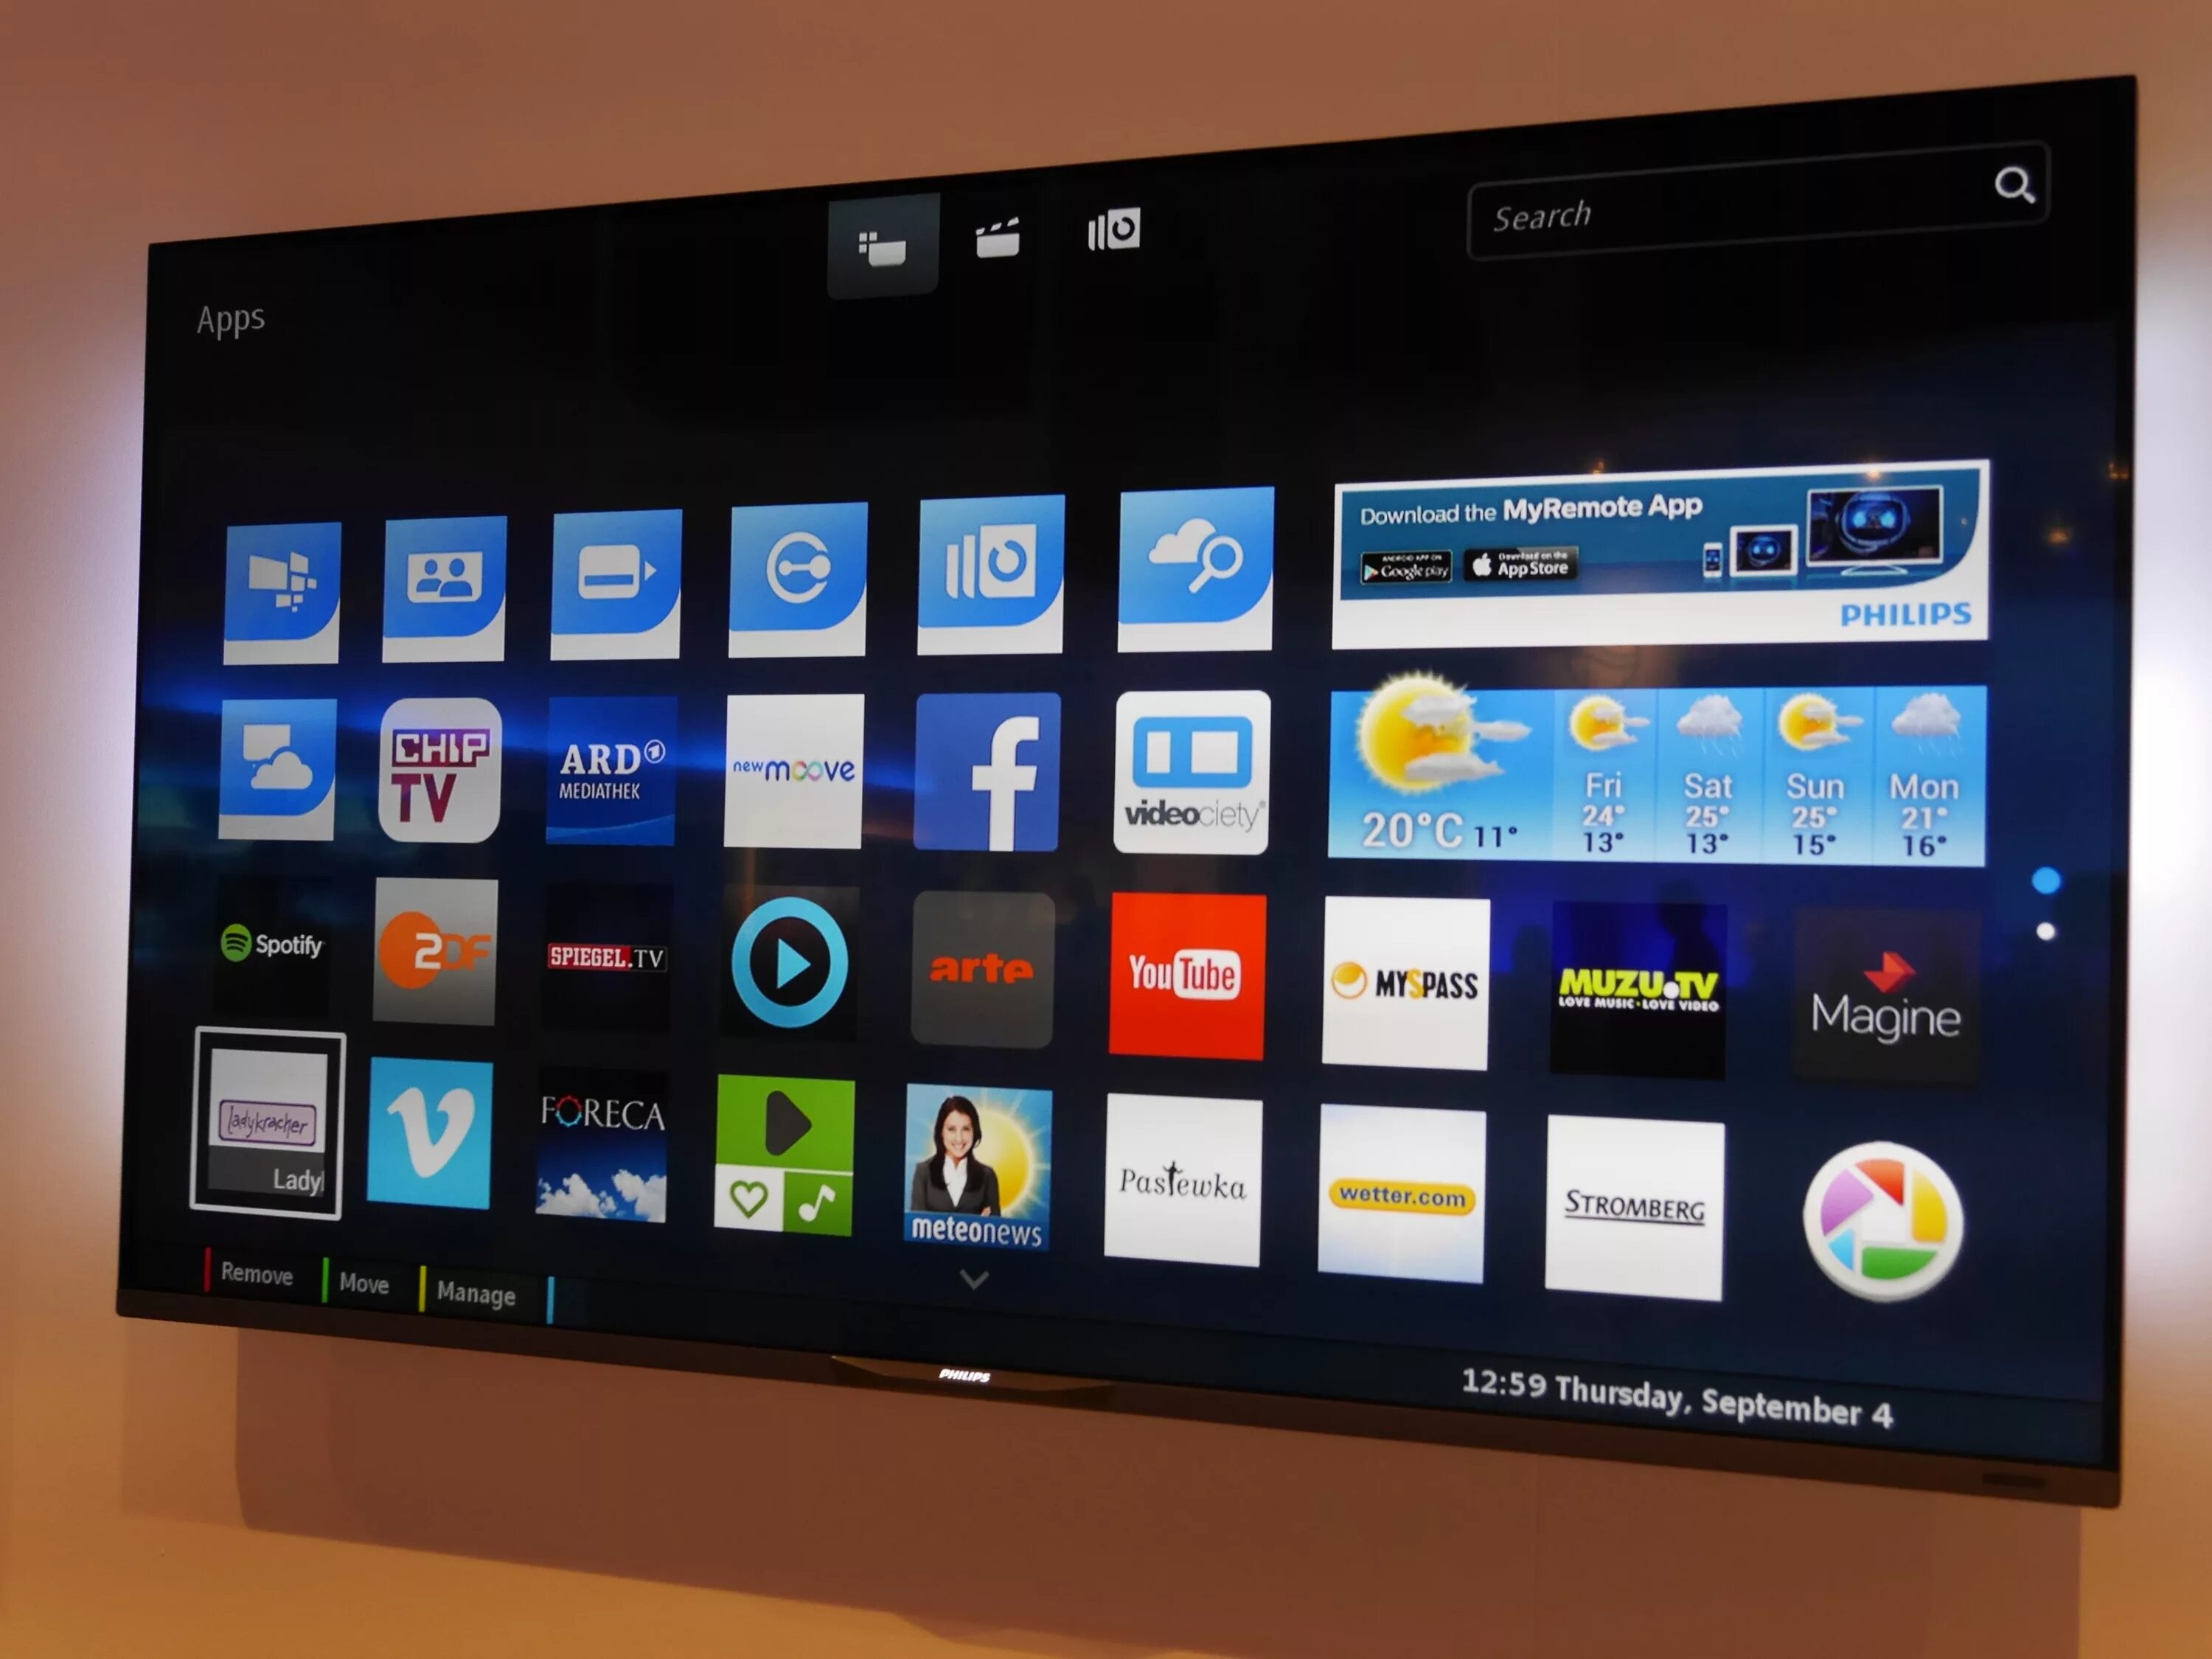 Телевизор Филипс смарт ТВ. Philips Android Smart TV. Philips телевизор со смарт тв2012. Samsung Smart TV Android 11.